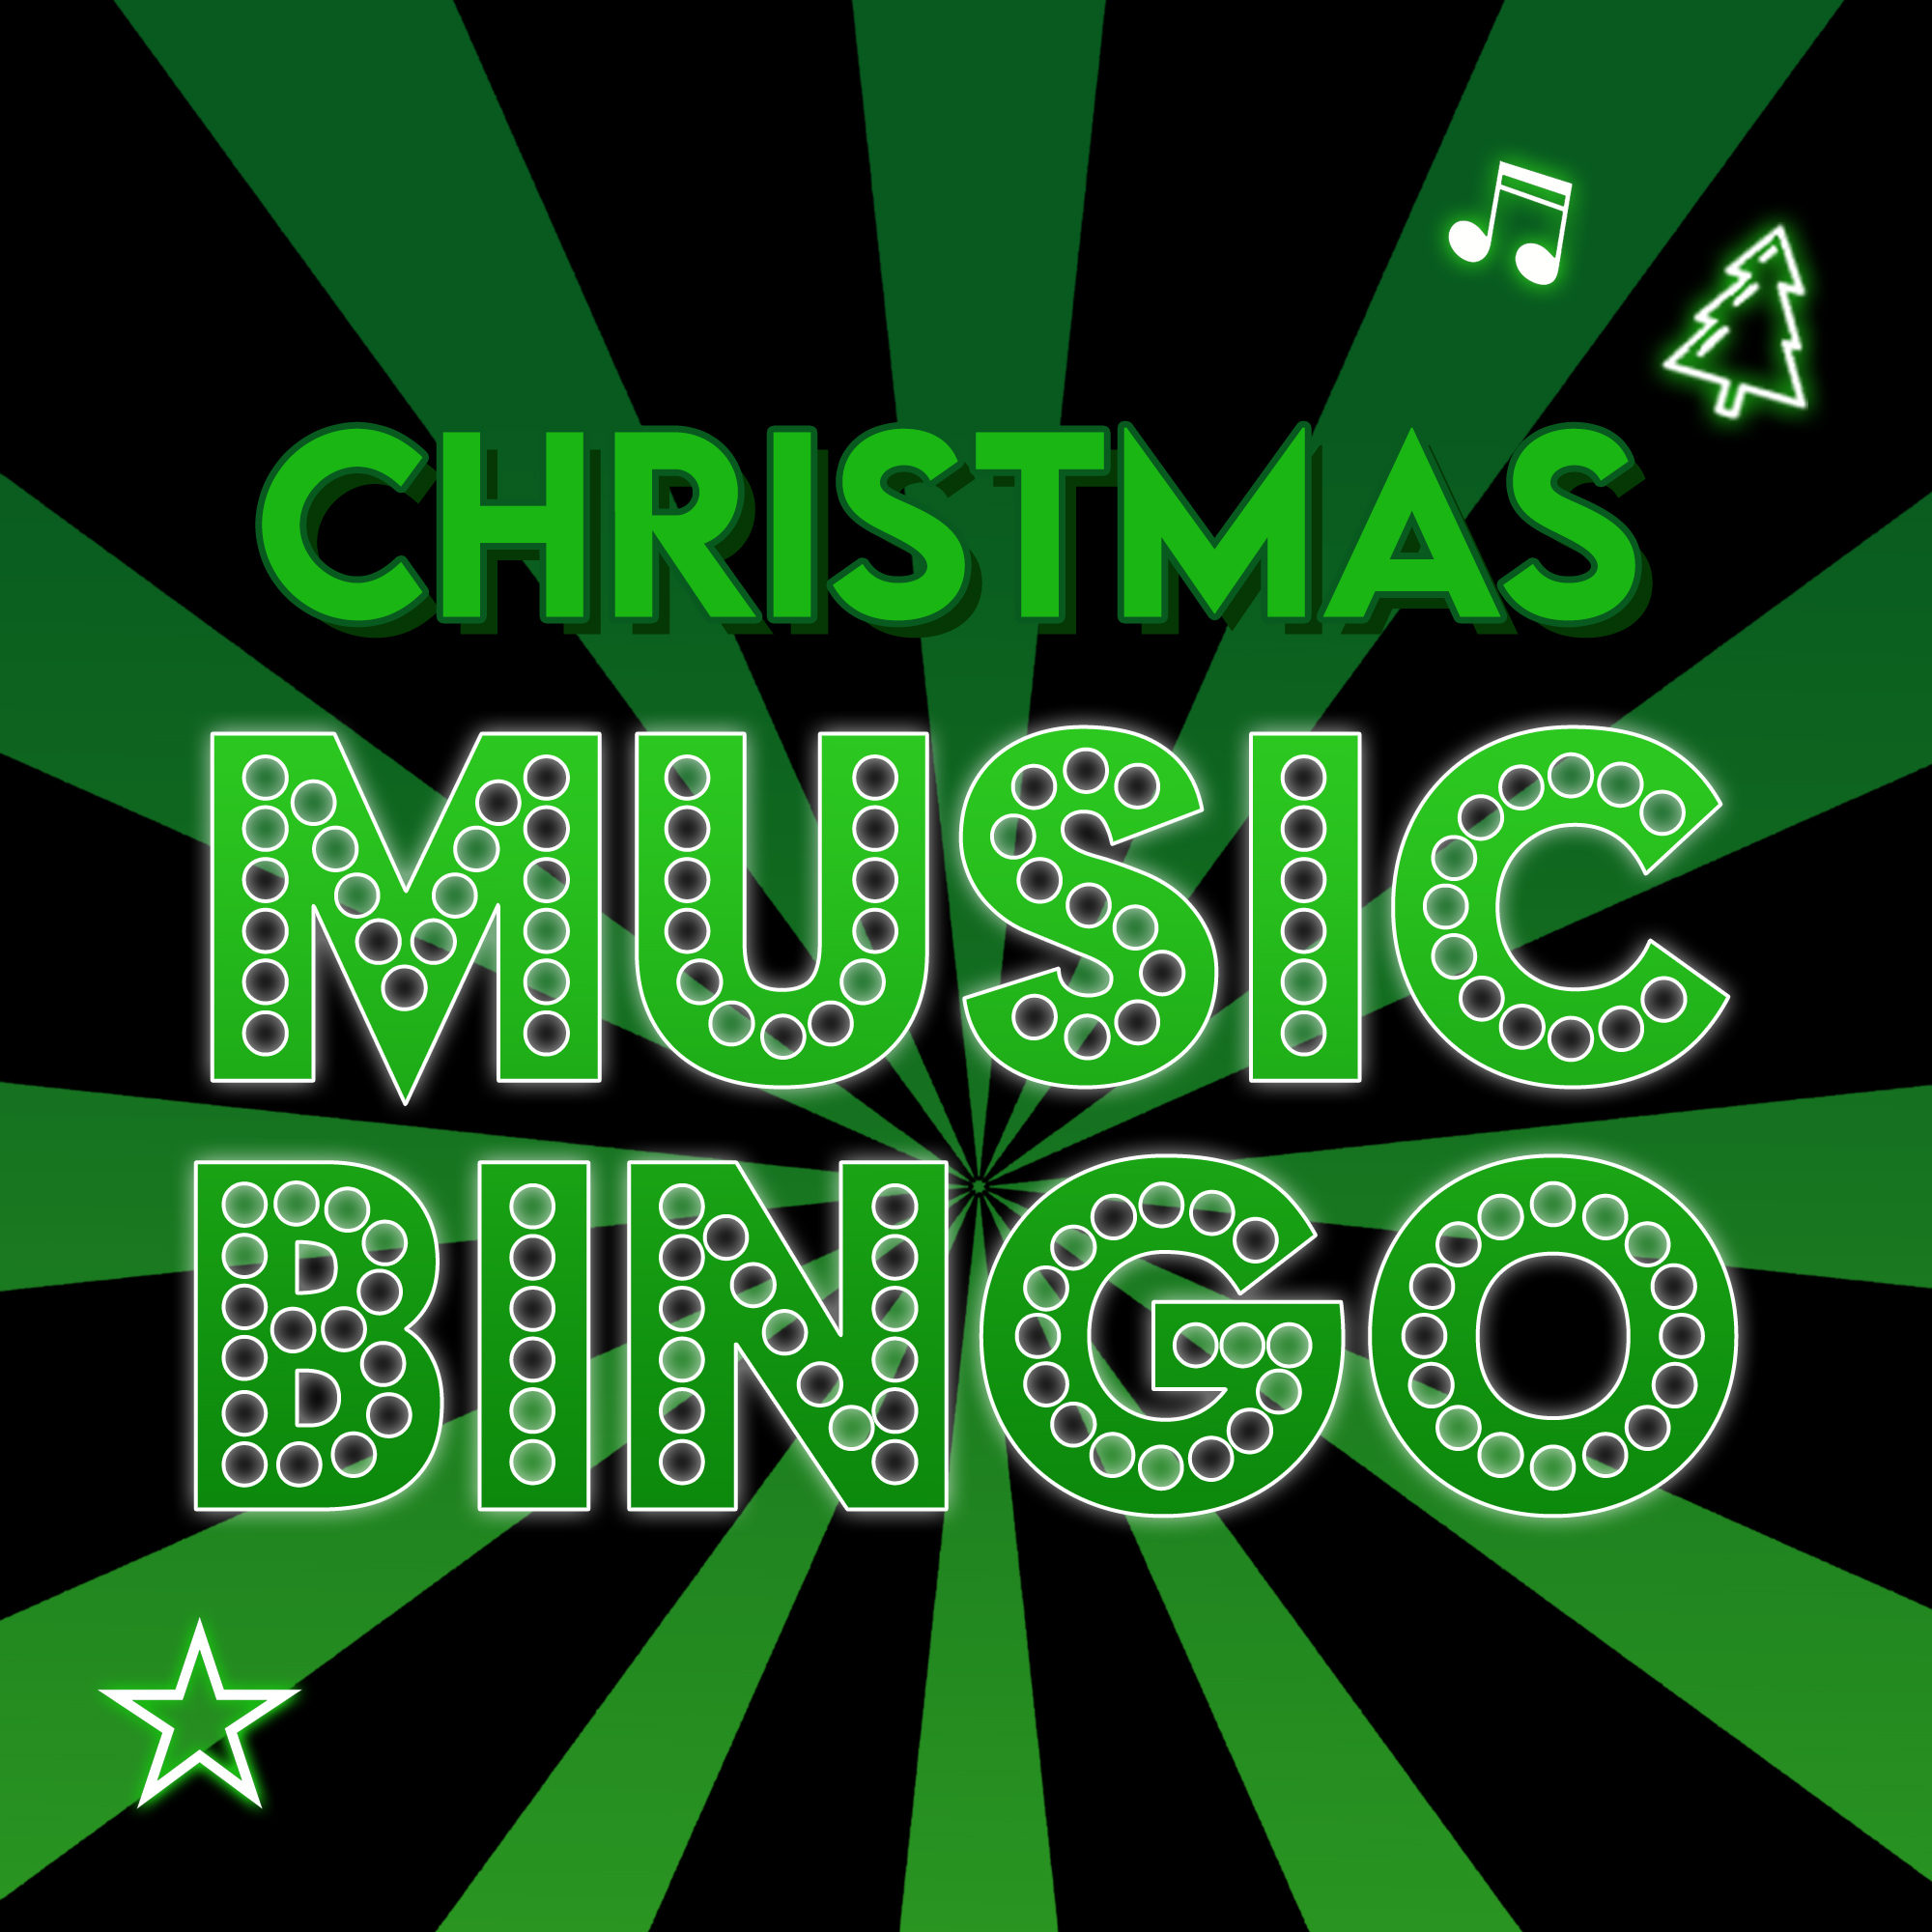 Christmas Music Bingo